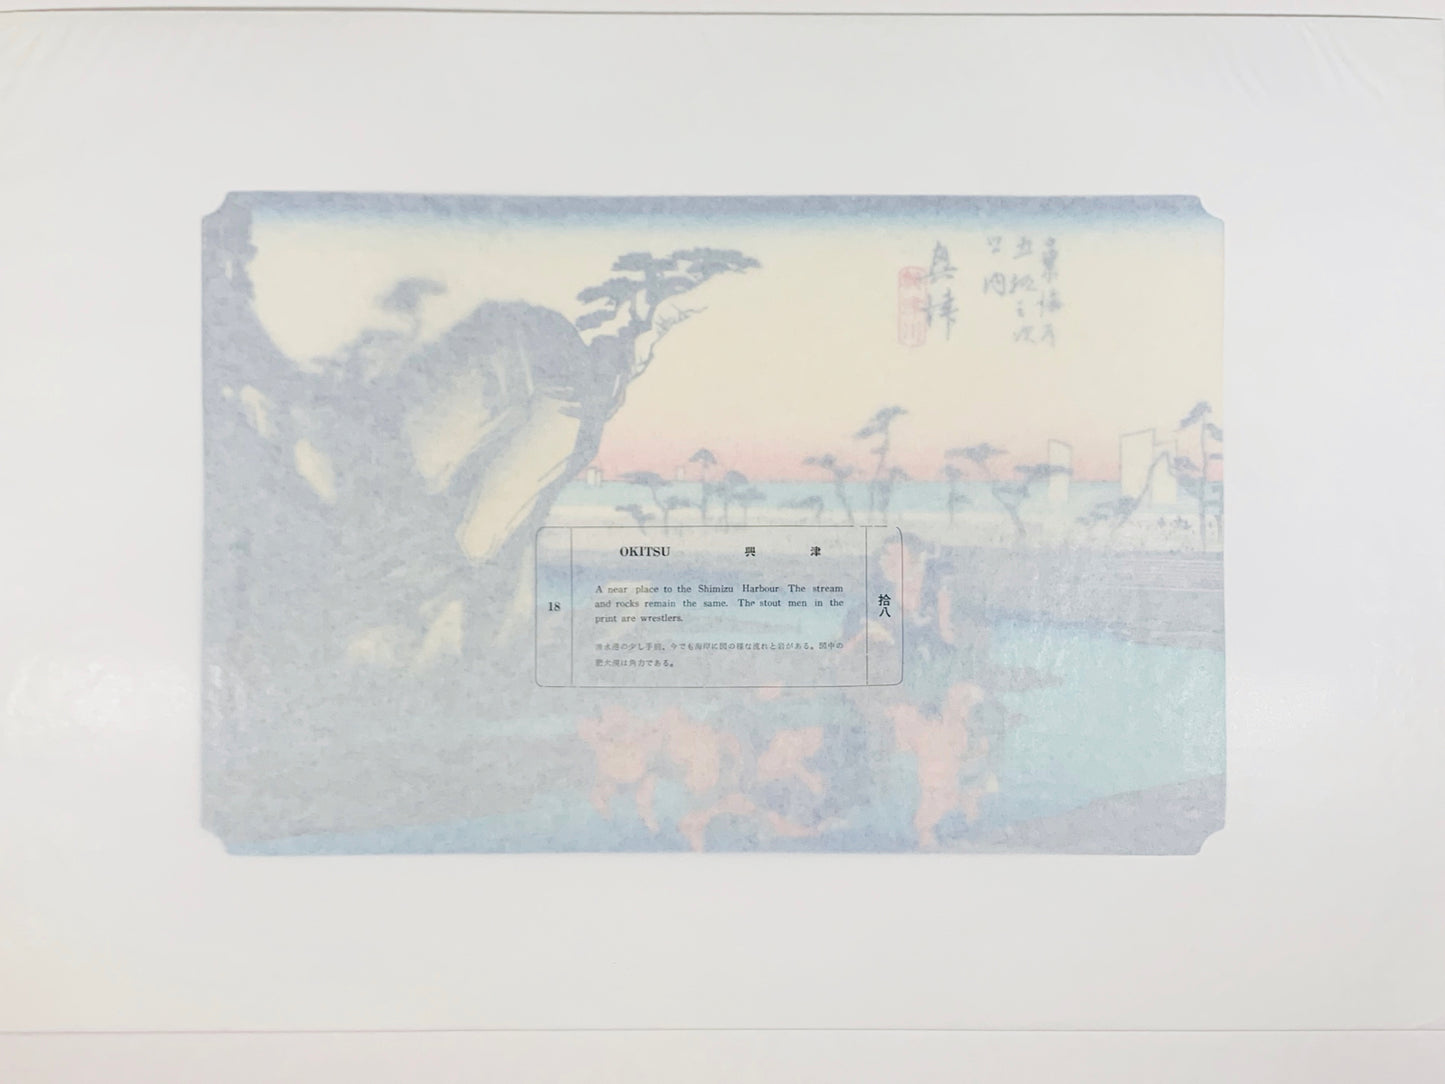 estampe japonaise de paysage de Hiroshige, deux sumos sont portés par quatres hommes sur le chemin inondé du Tokaido, le texte sur papier cristal